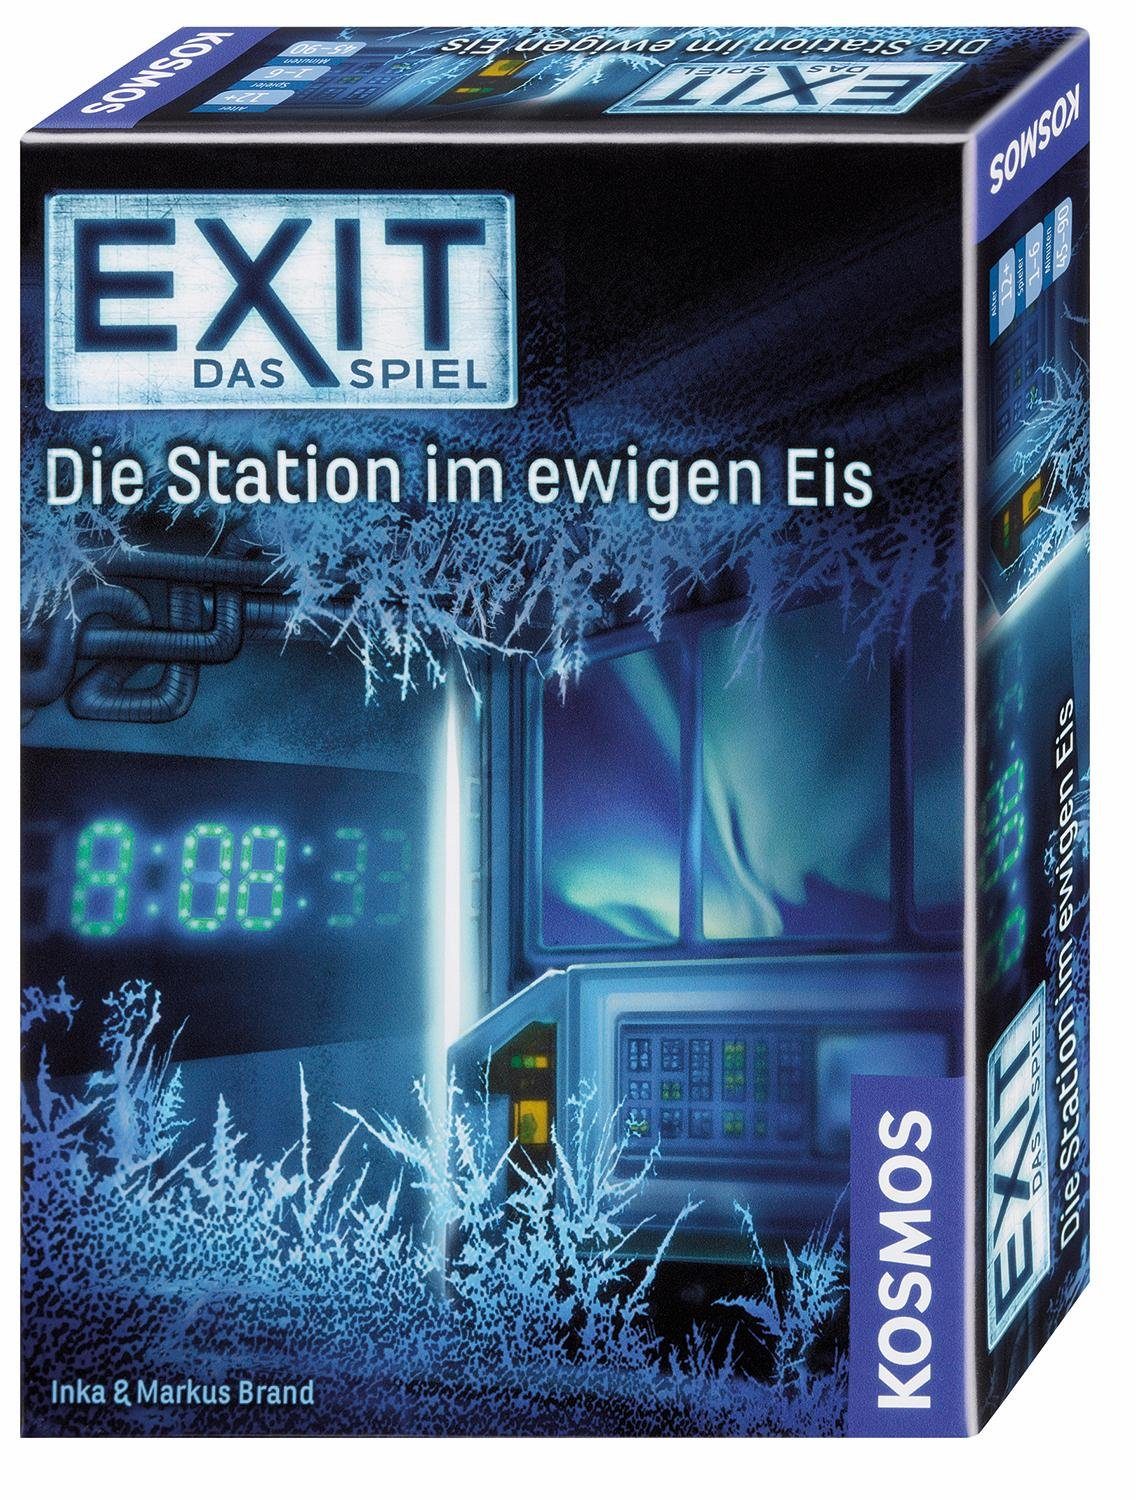 Kosmos Spiel, Exit Das Spiel, Die Station im ewigen Eis, Made in Germany